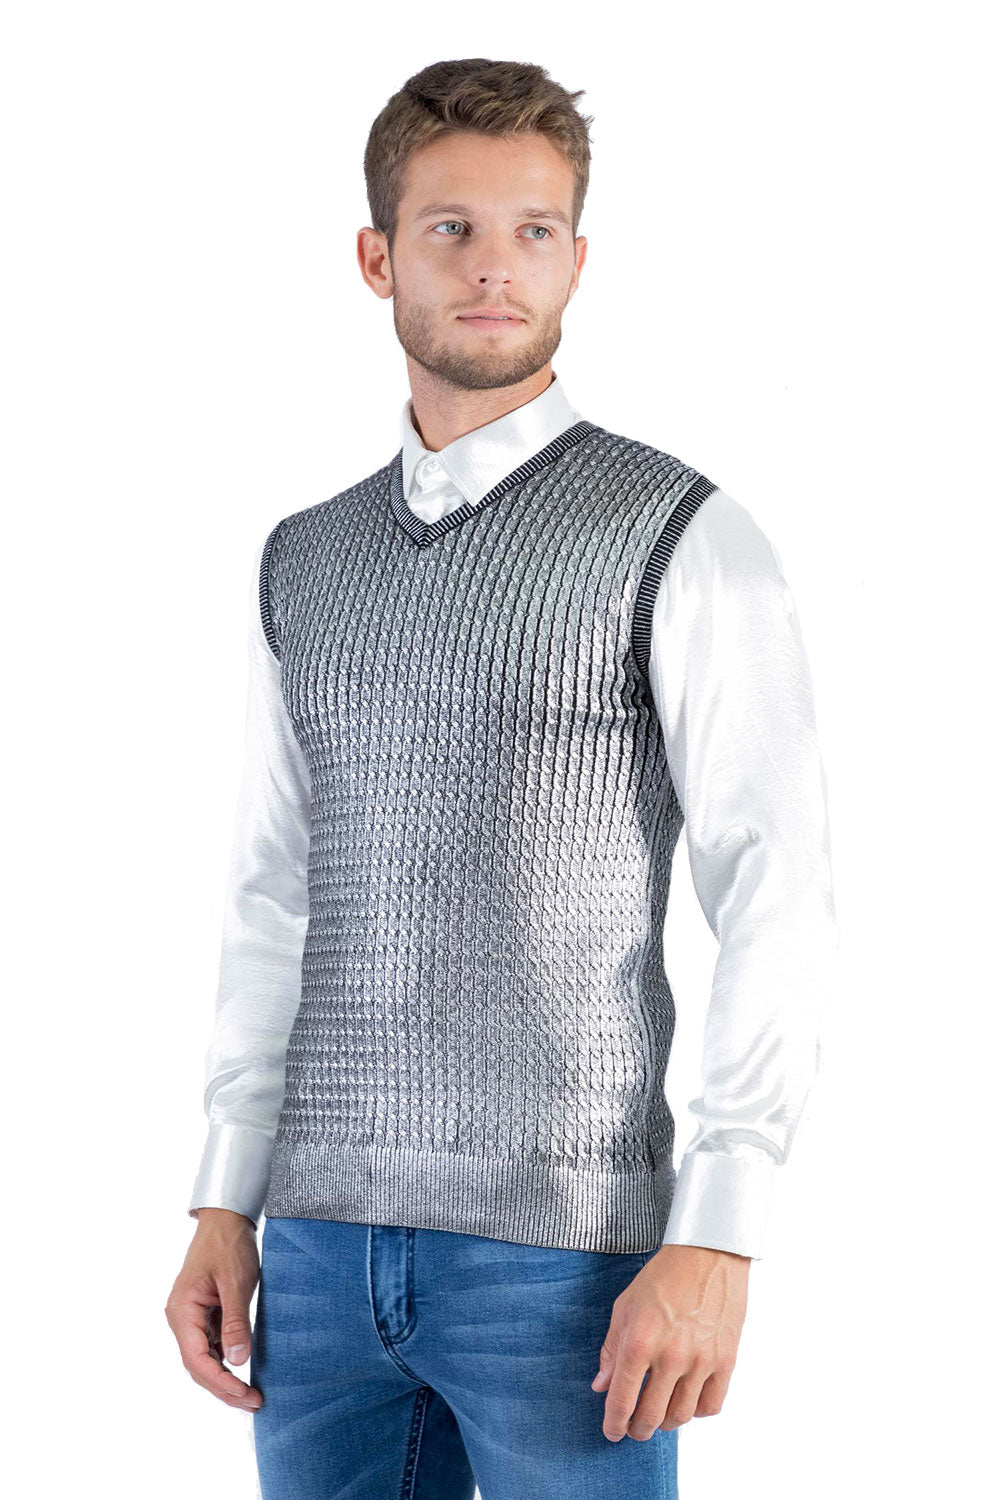 BARABAS Men's Shiny Sleeveless Fisherman Knitted Sweater Vest WV201 Silver